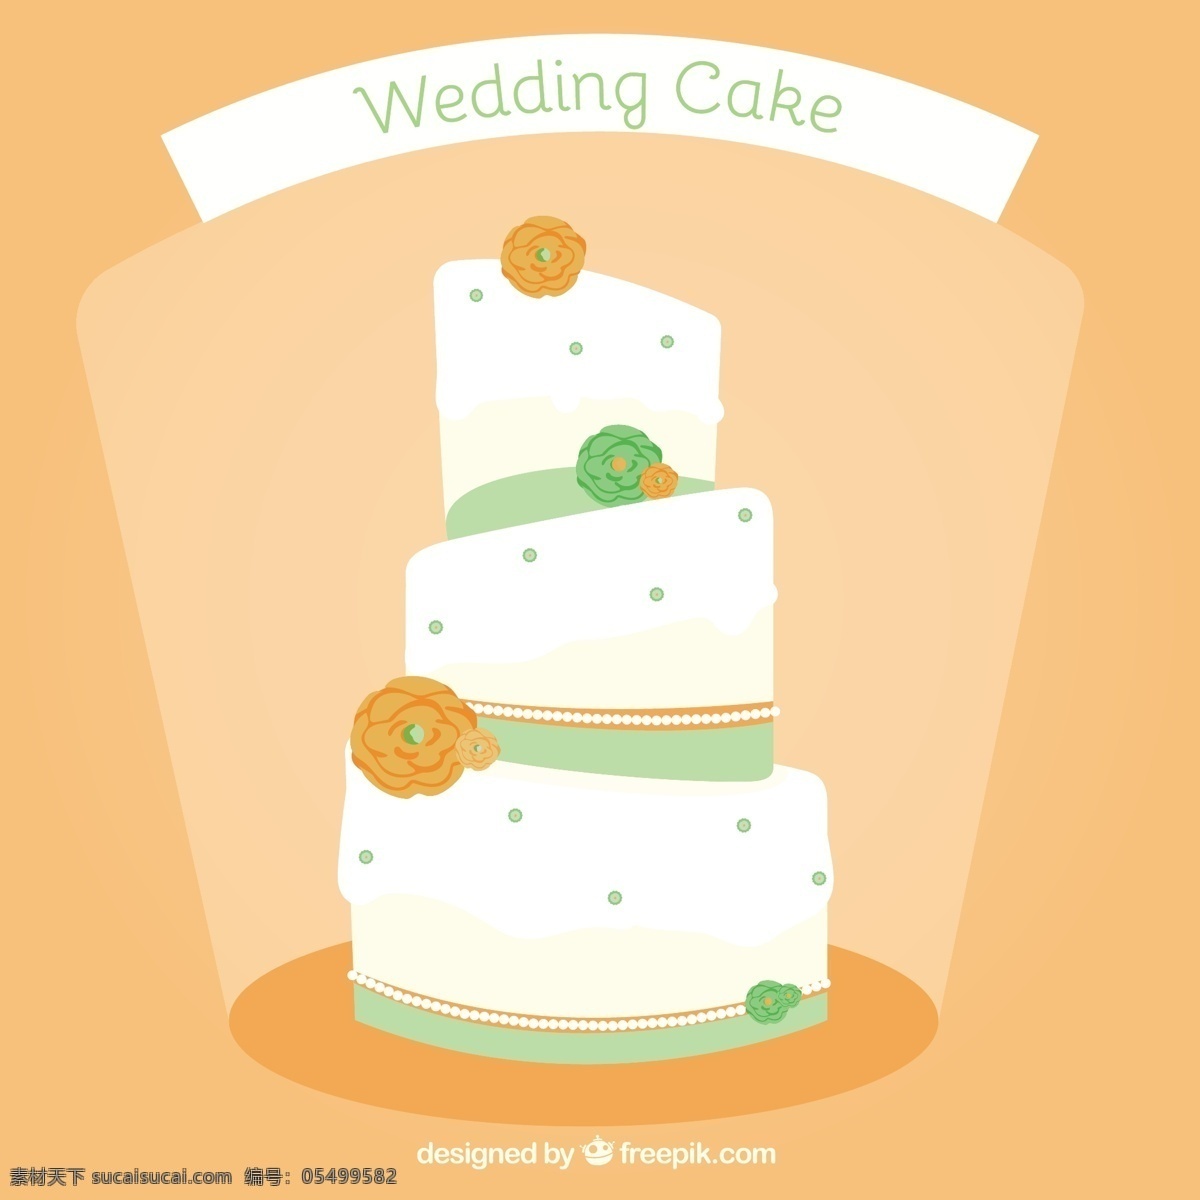 婚礼蛋糕 结婚 爱情 蛋糕 面包 庆祝 甜蜜 浪漫 订婚 结婚蛋糕 仪式 美味 黄色